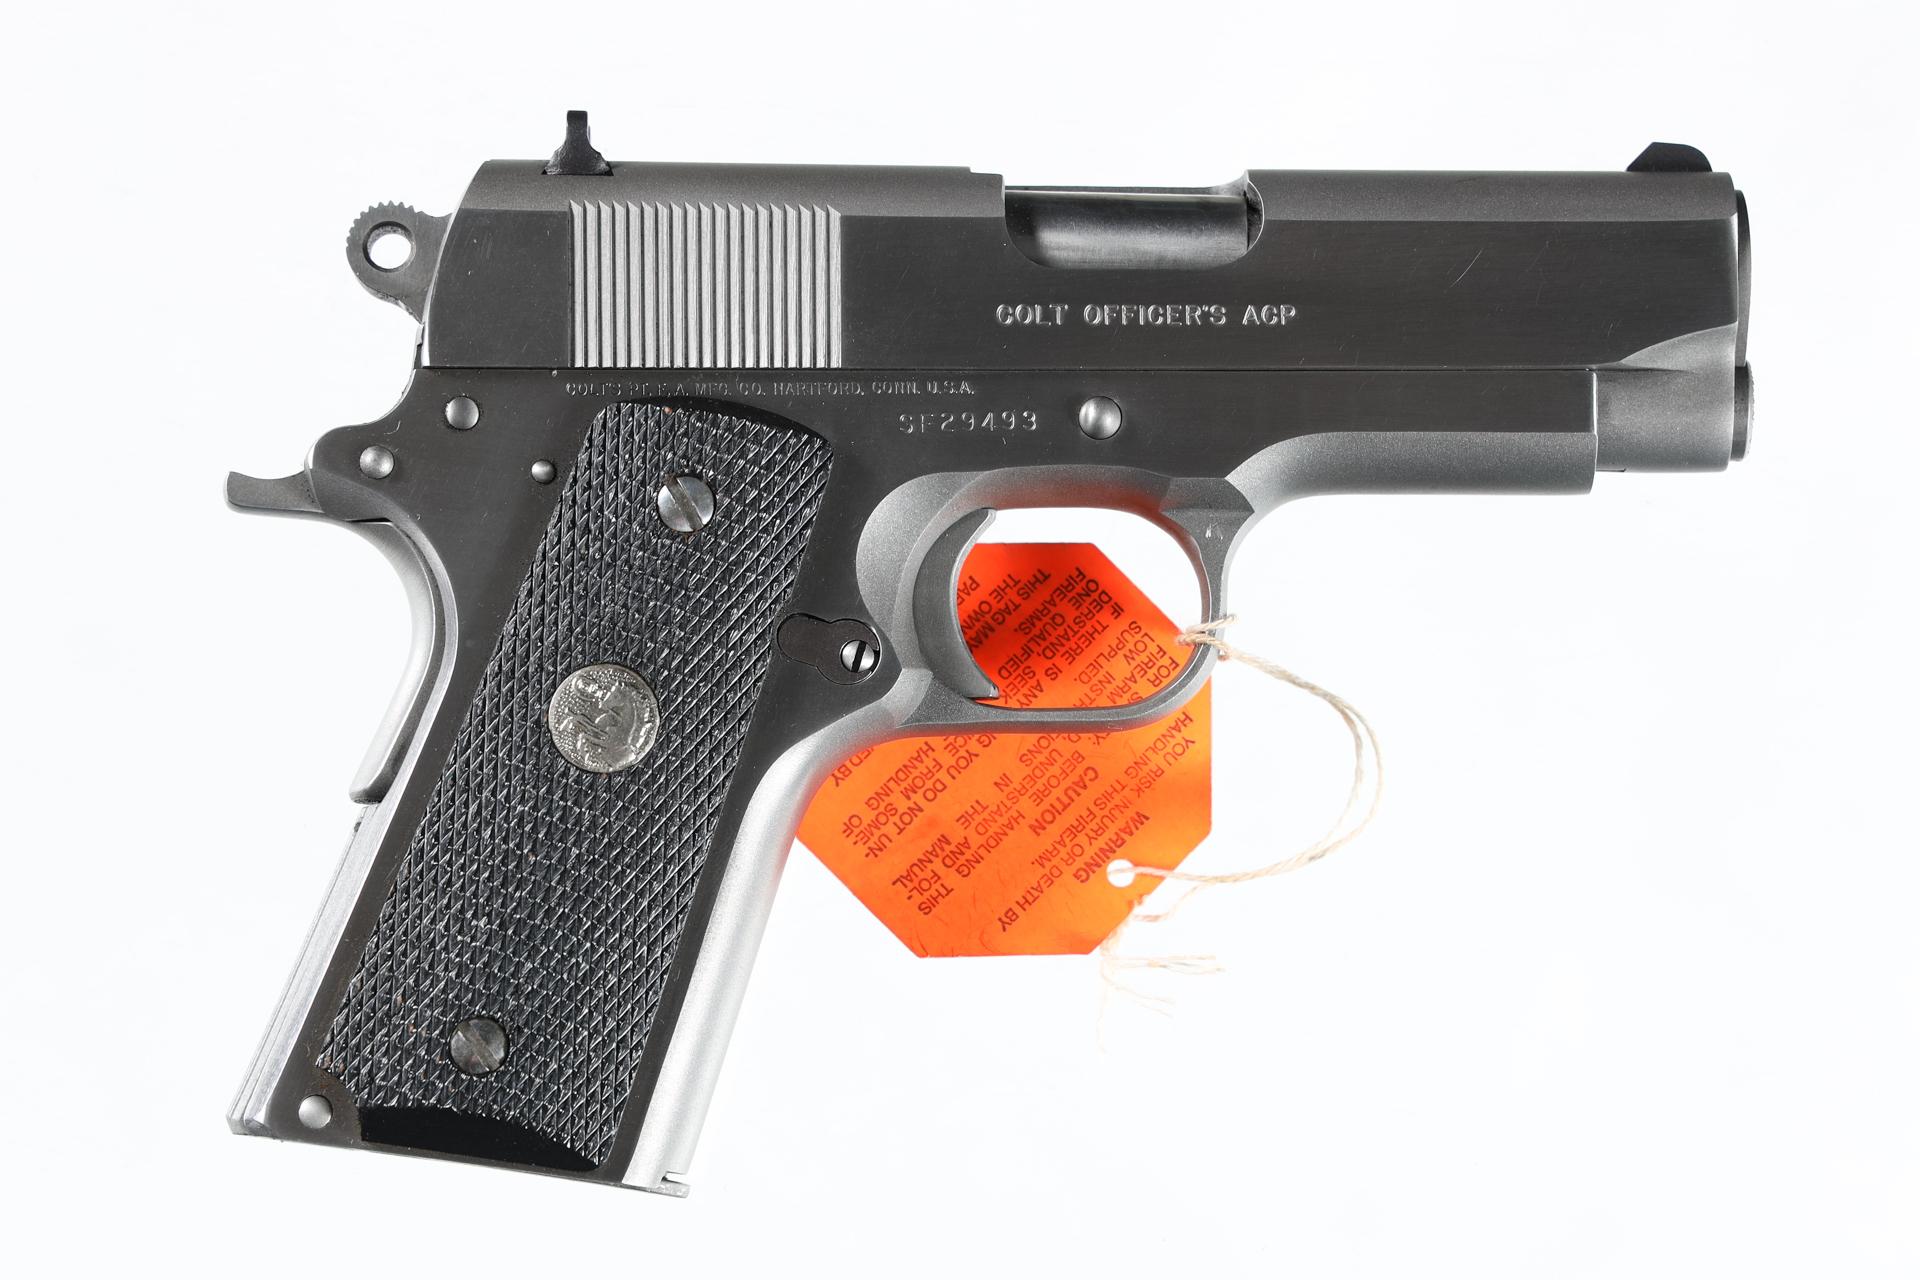 Colt Officer's ACP Pistol .45 ACP